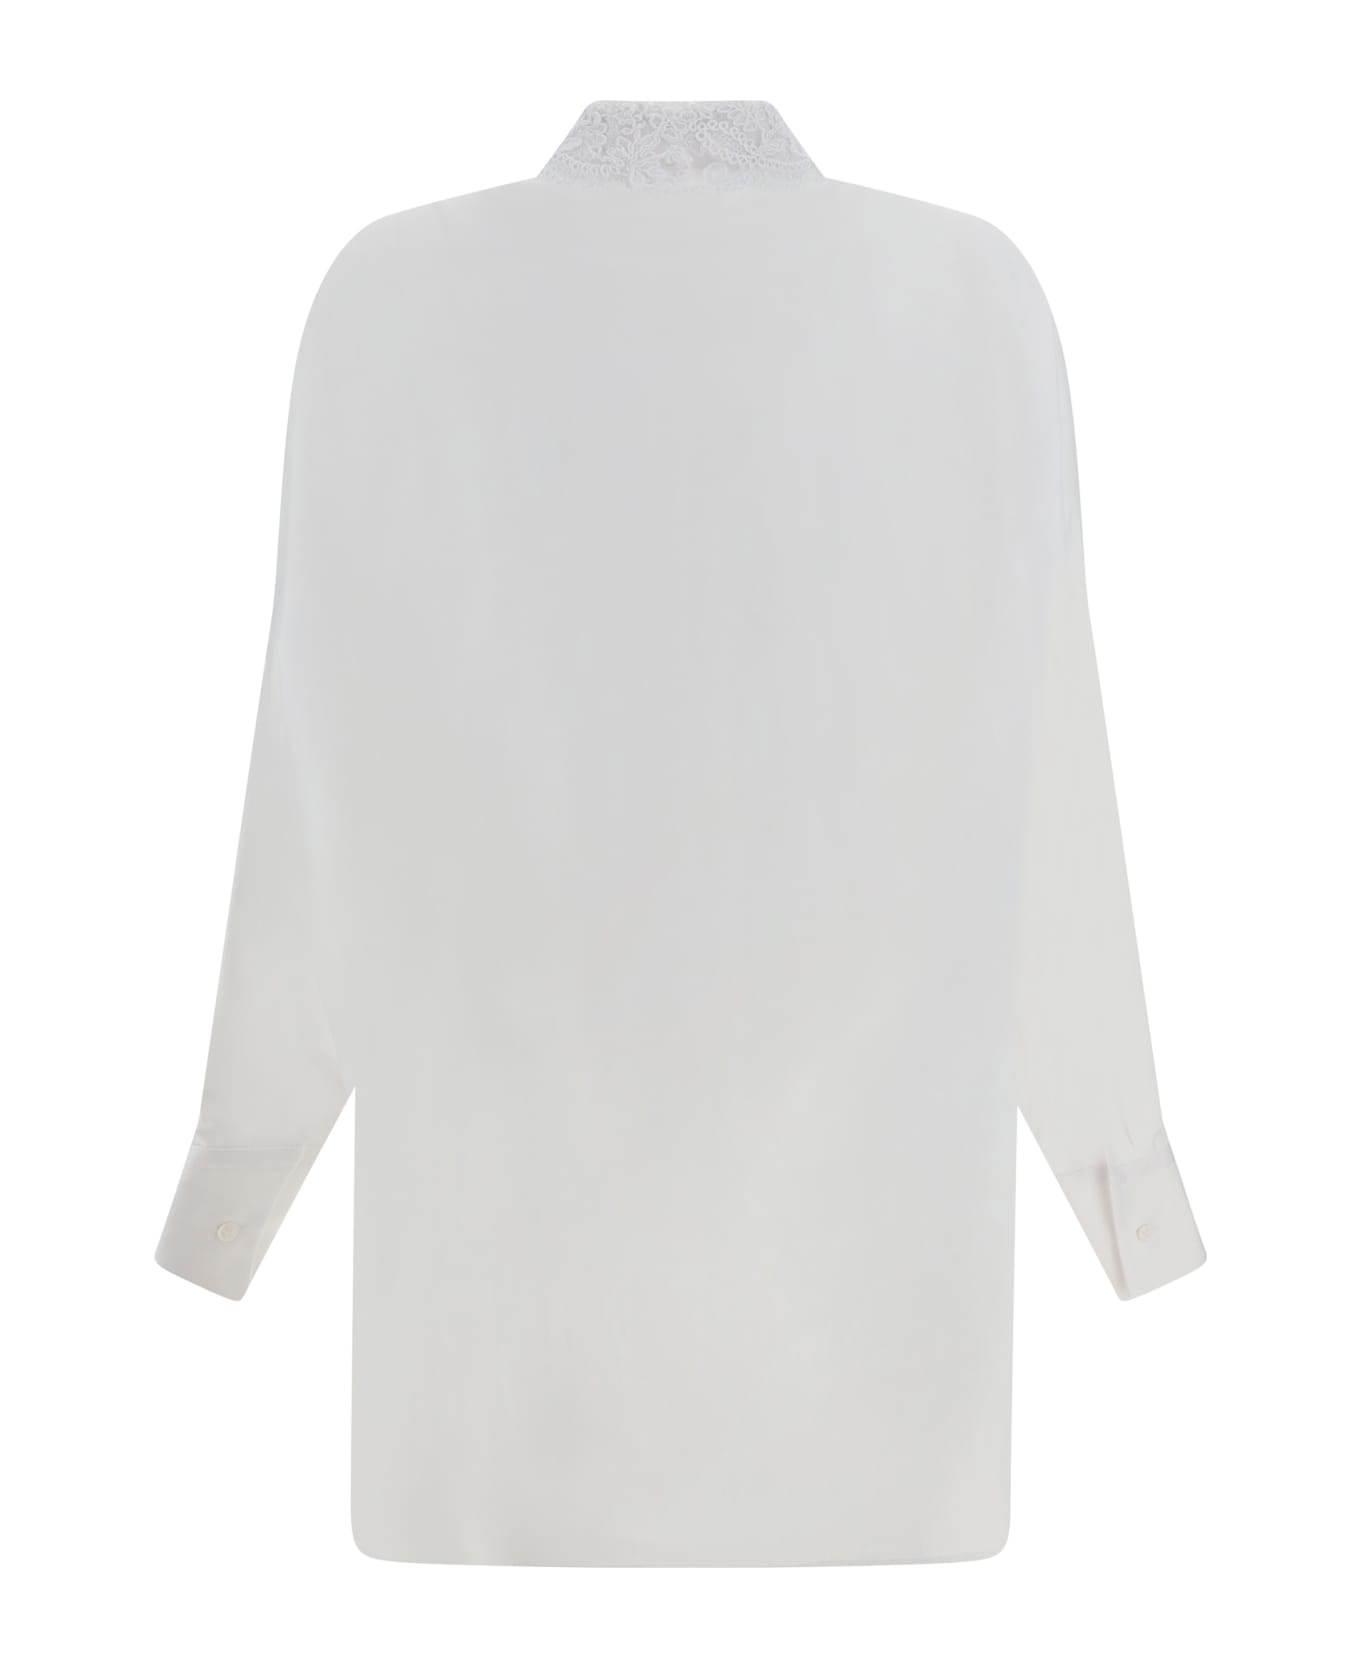 Ermanno Scervino Shirt - Bright White/ottico ブラウス